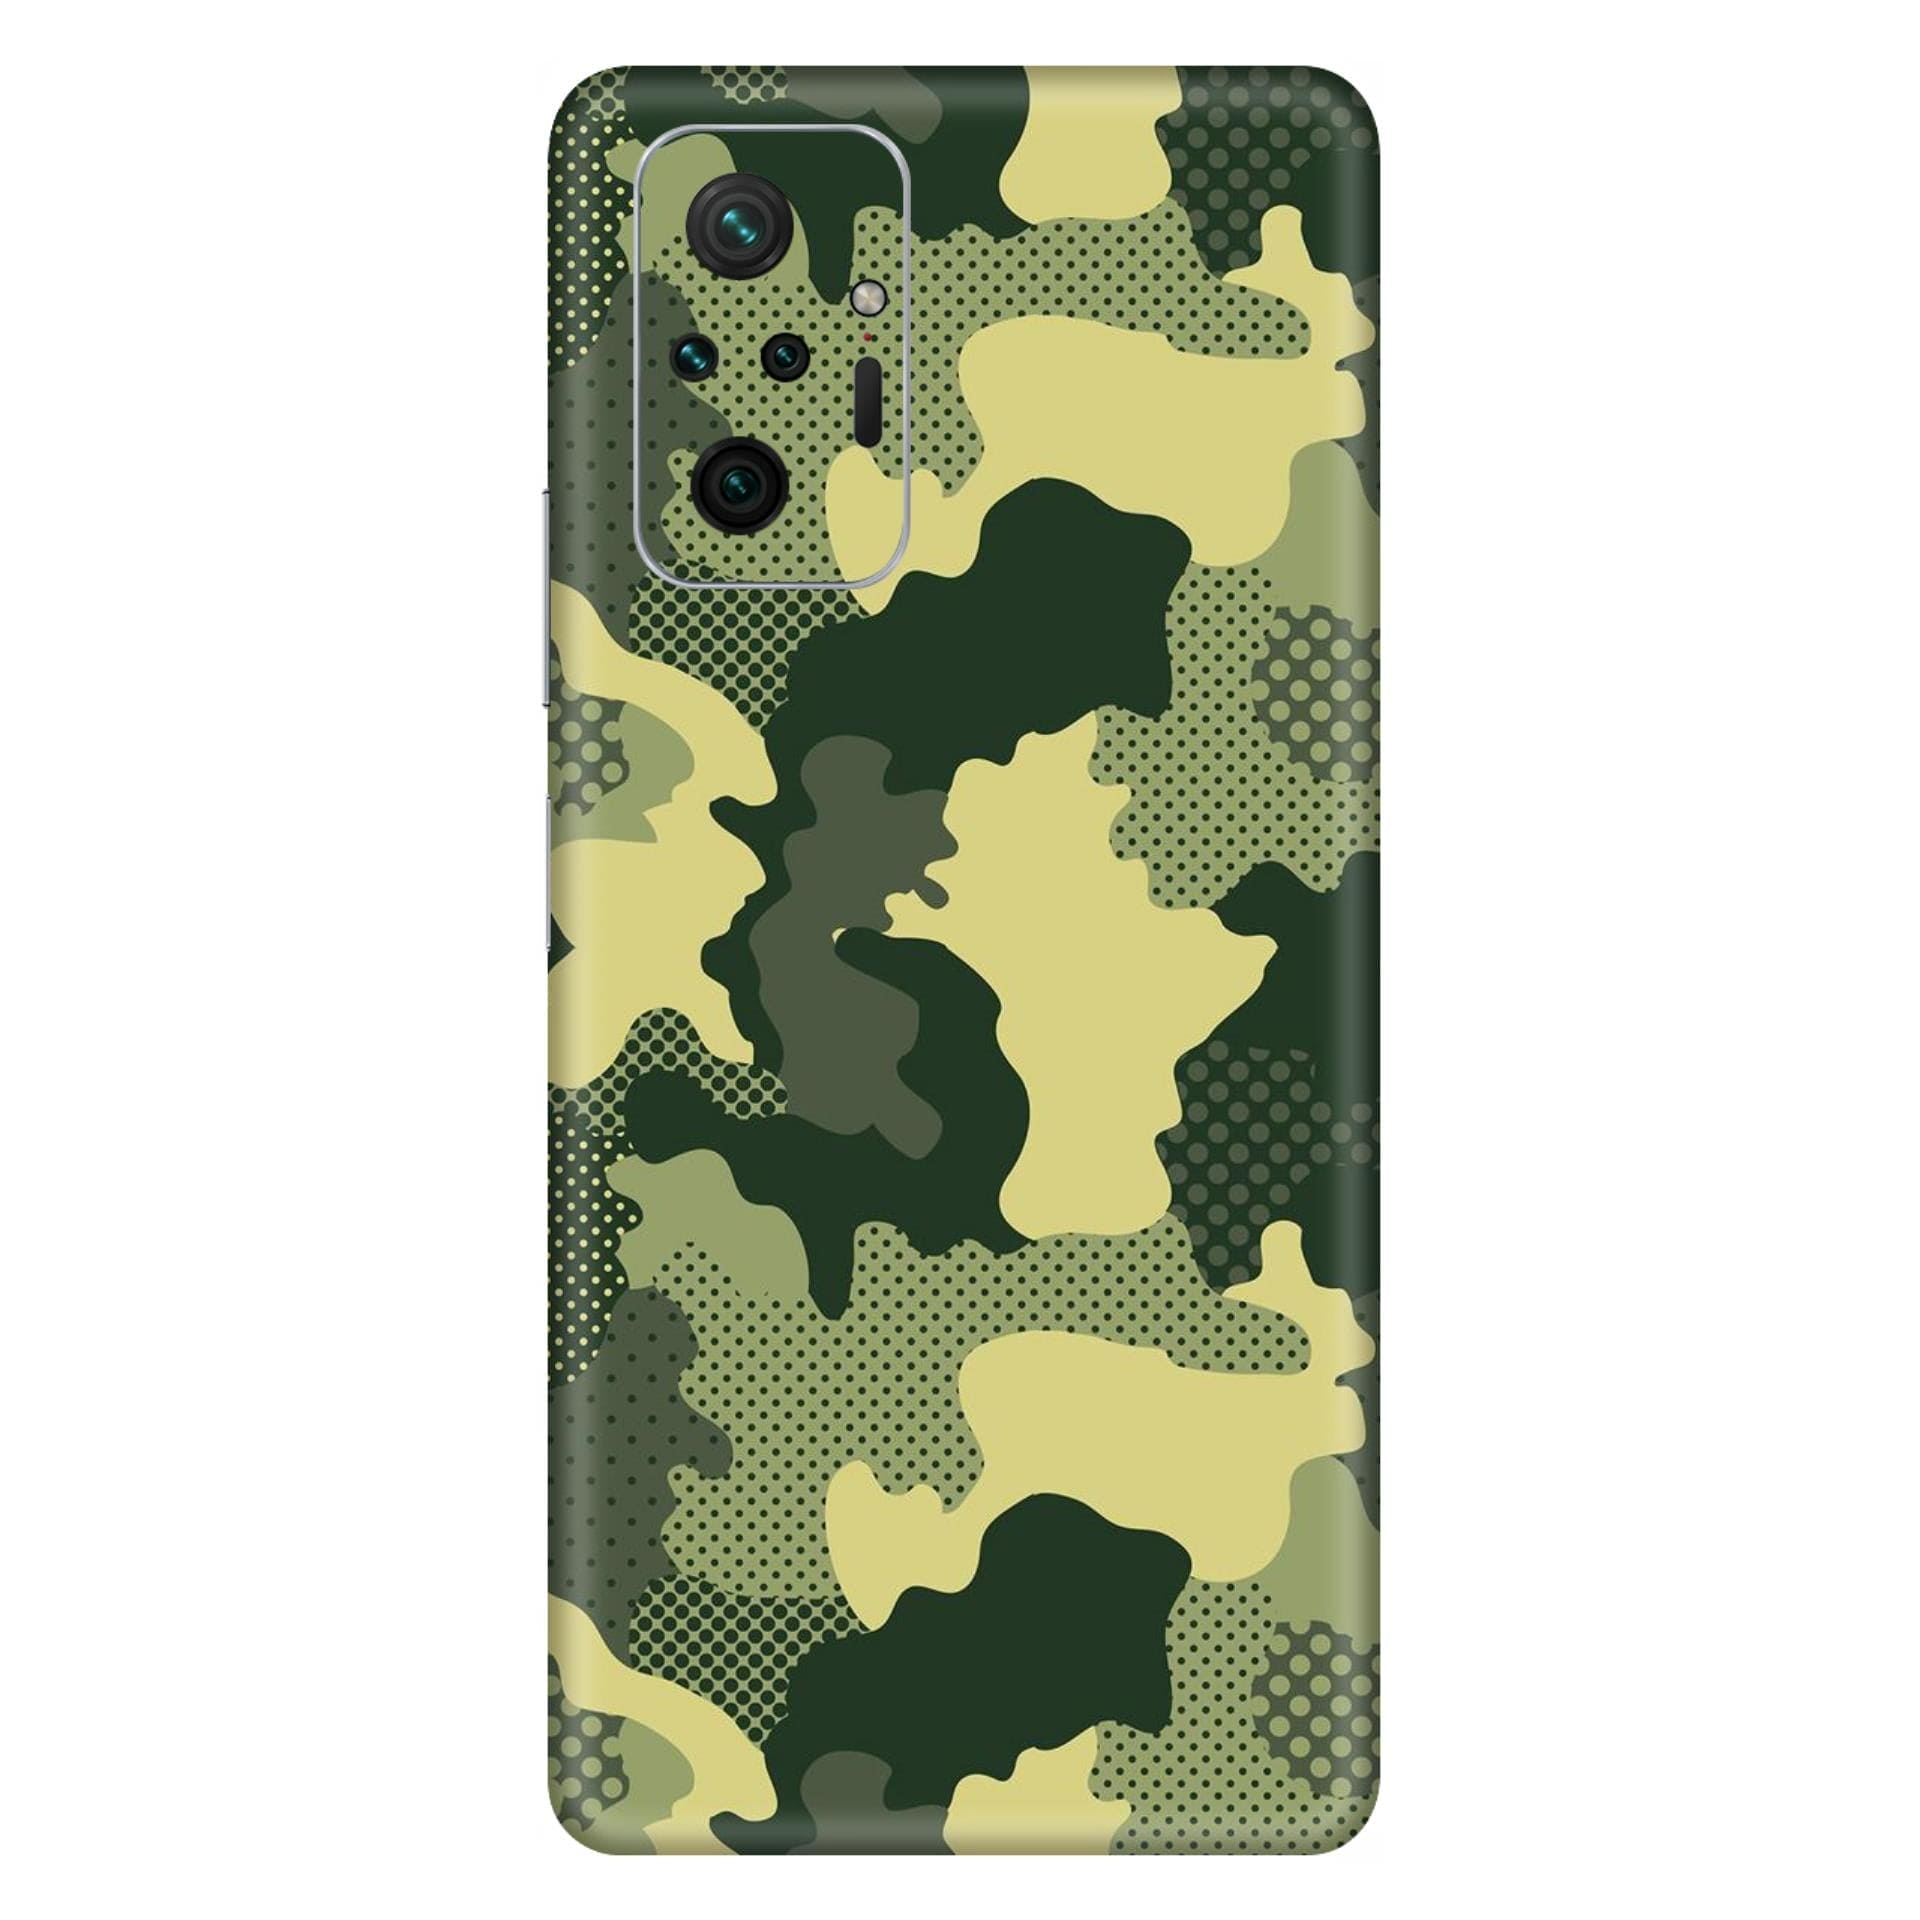 Redmi Note 10 Pro Max Military Green Camo skins